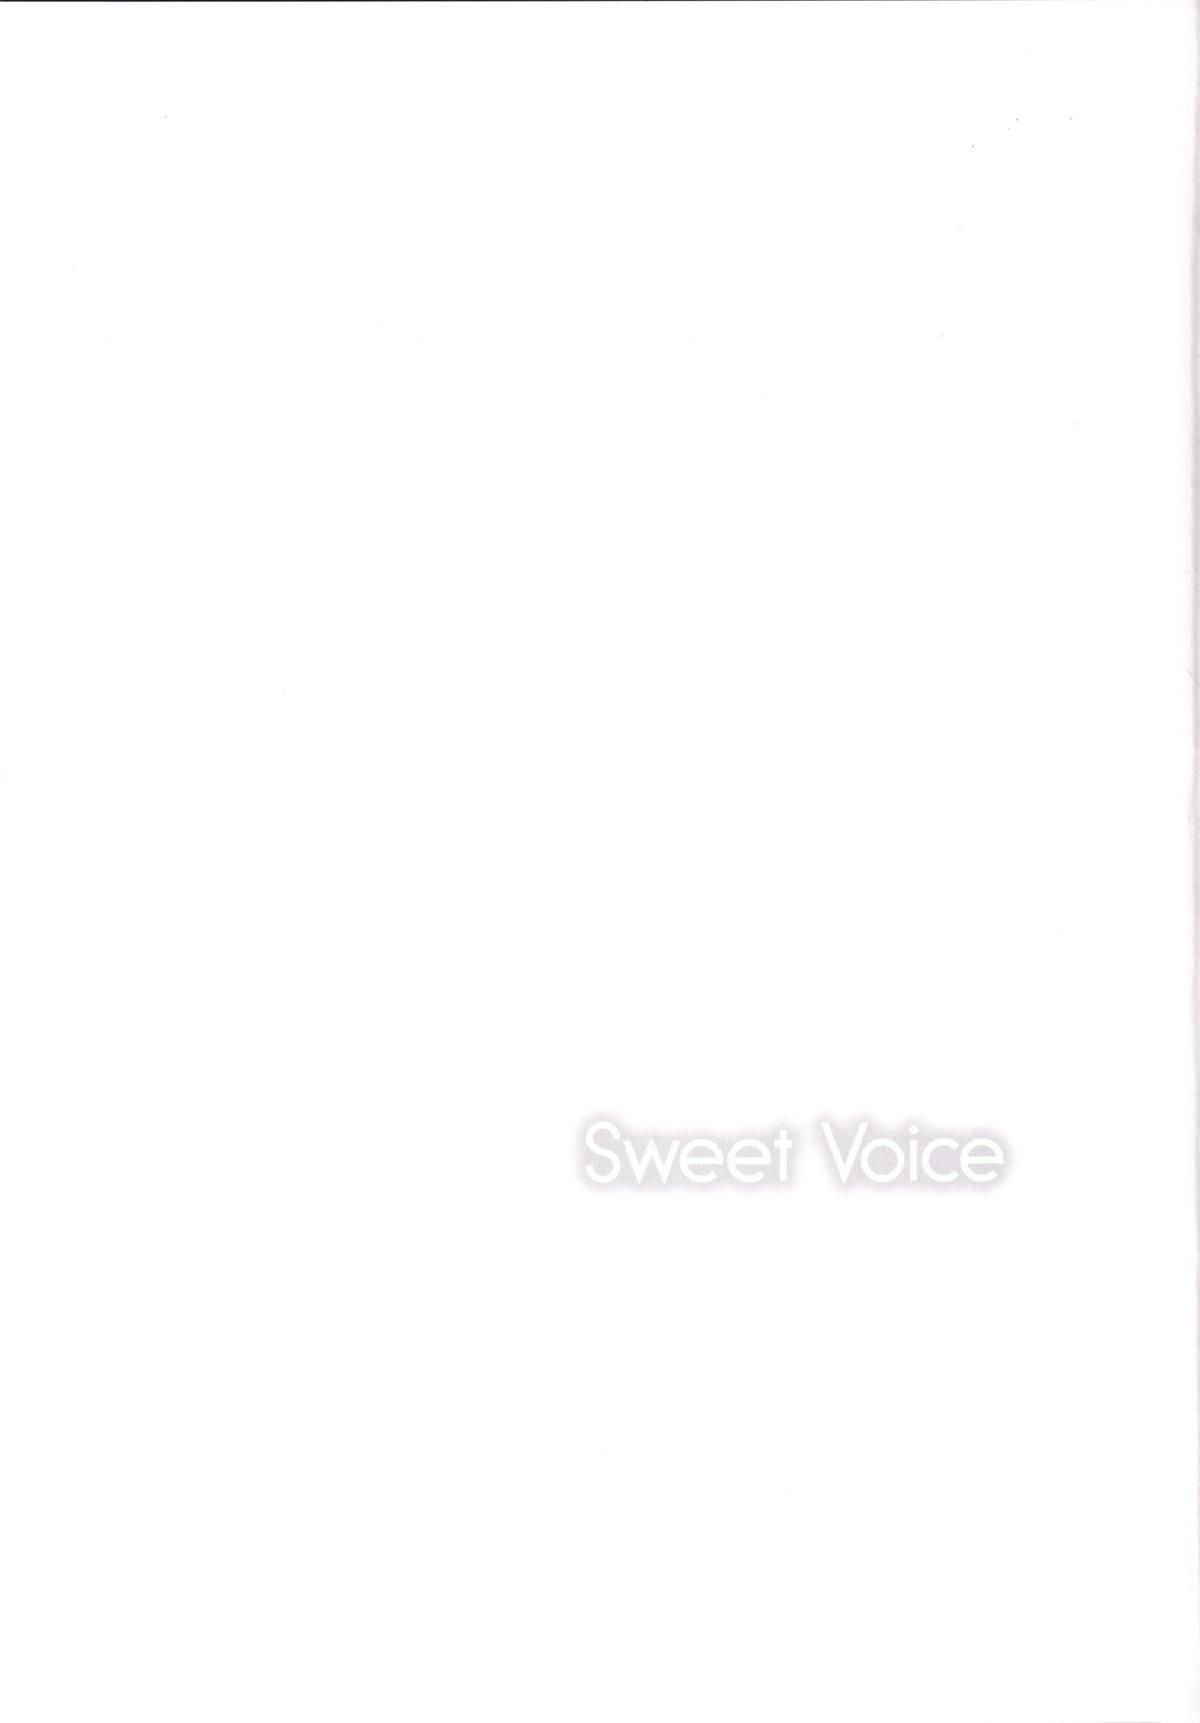 Sweet Voice 15